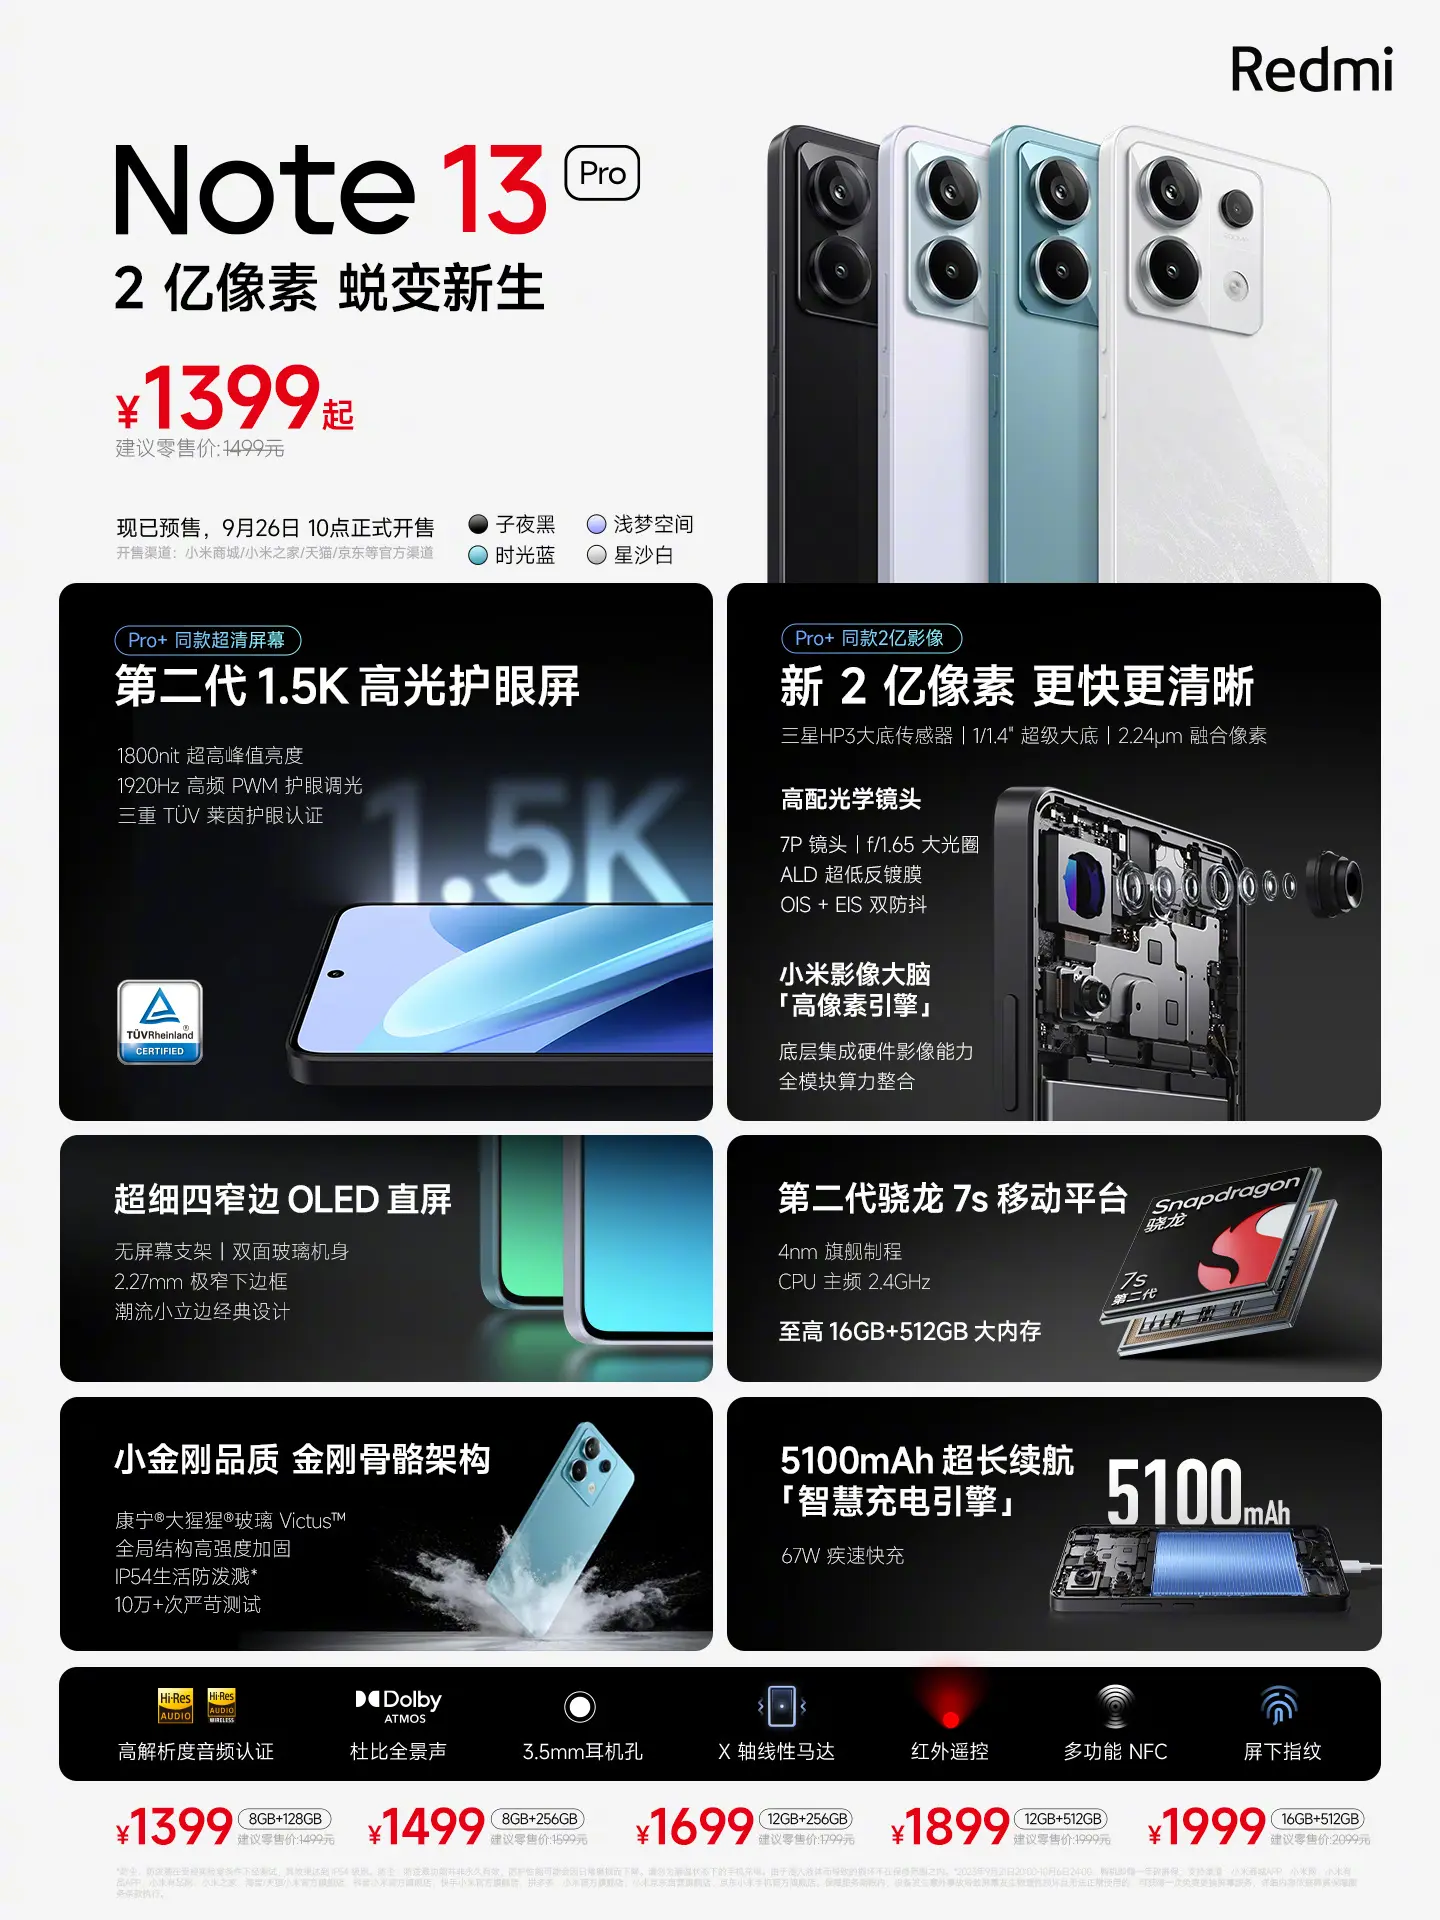 Brutál árakkal csapott le a Redmi Note 13 sorozat Kínában